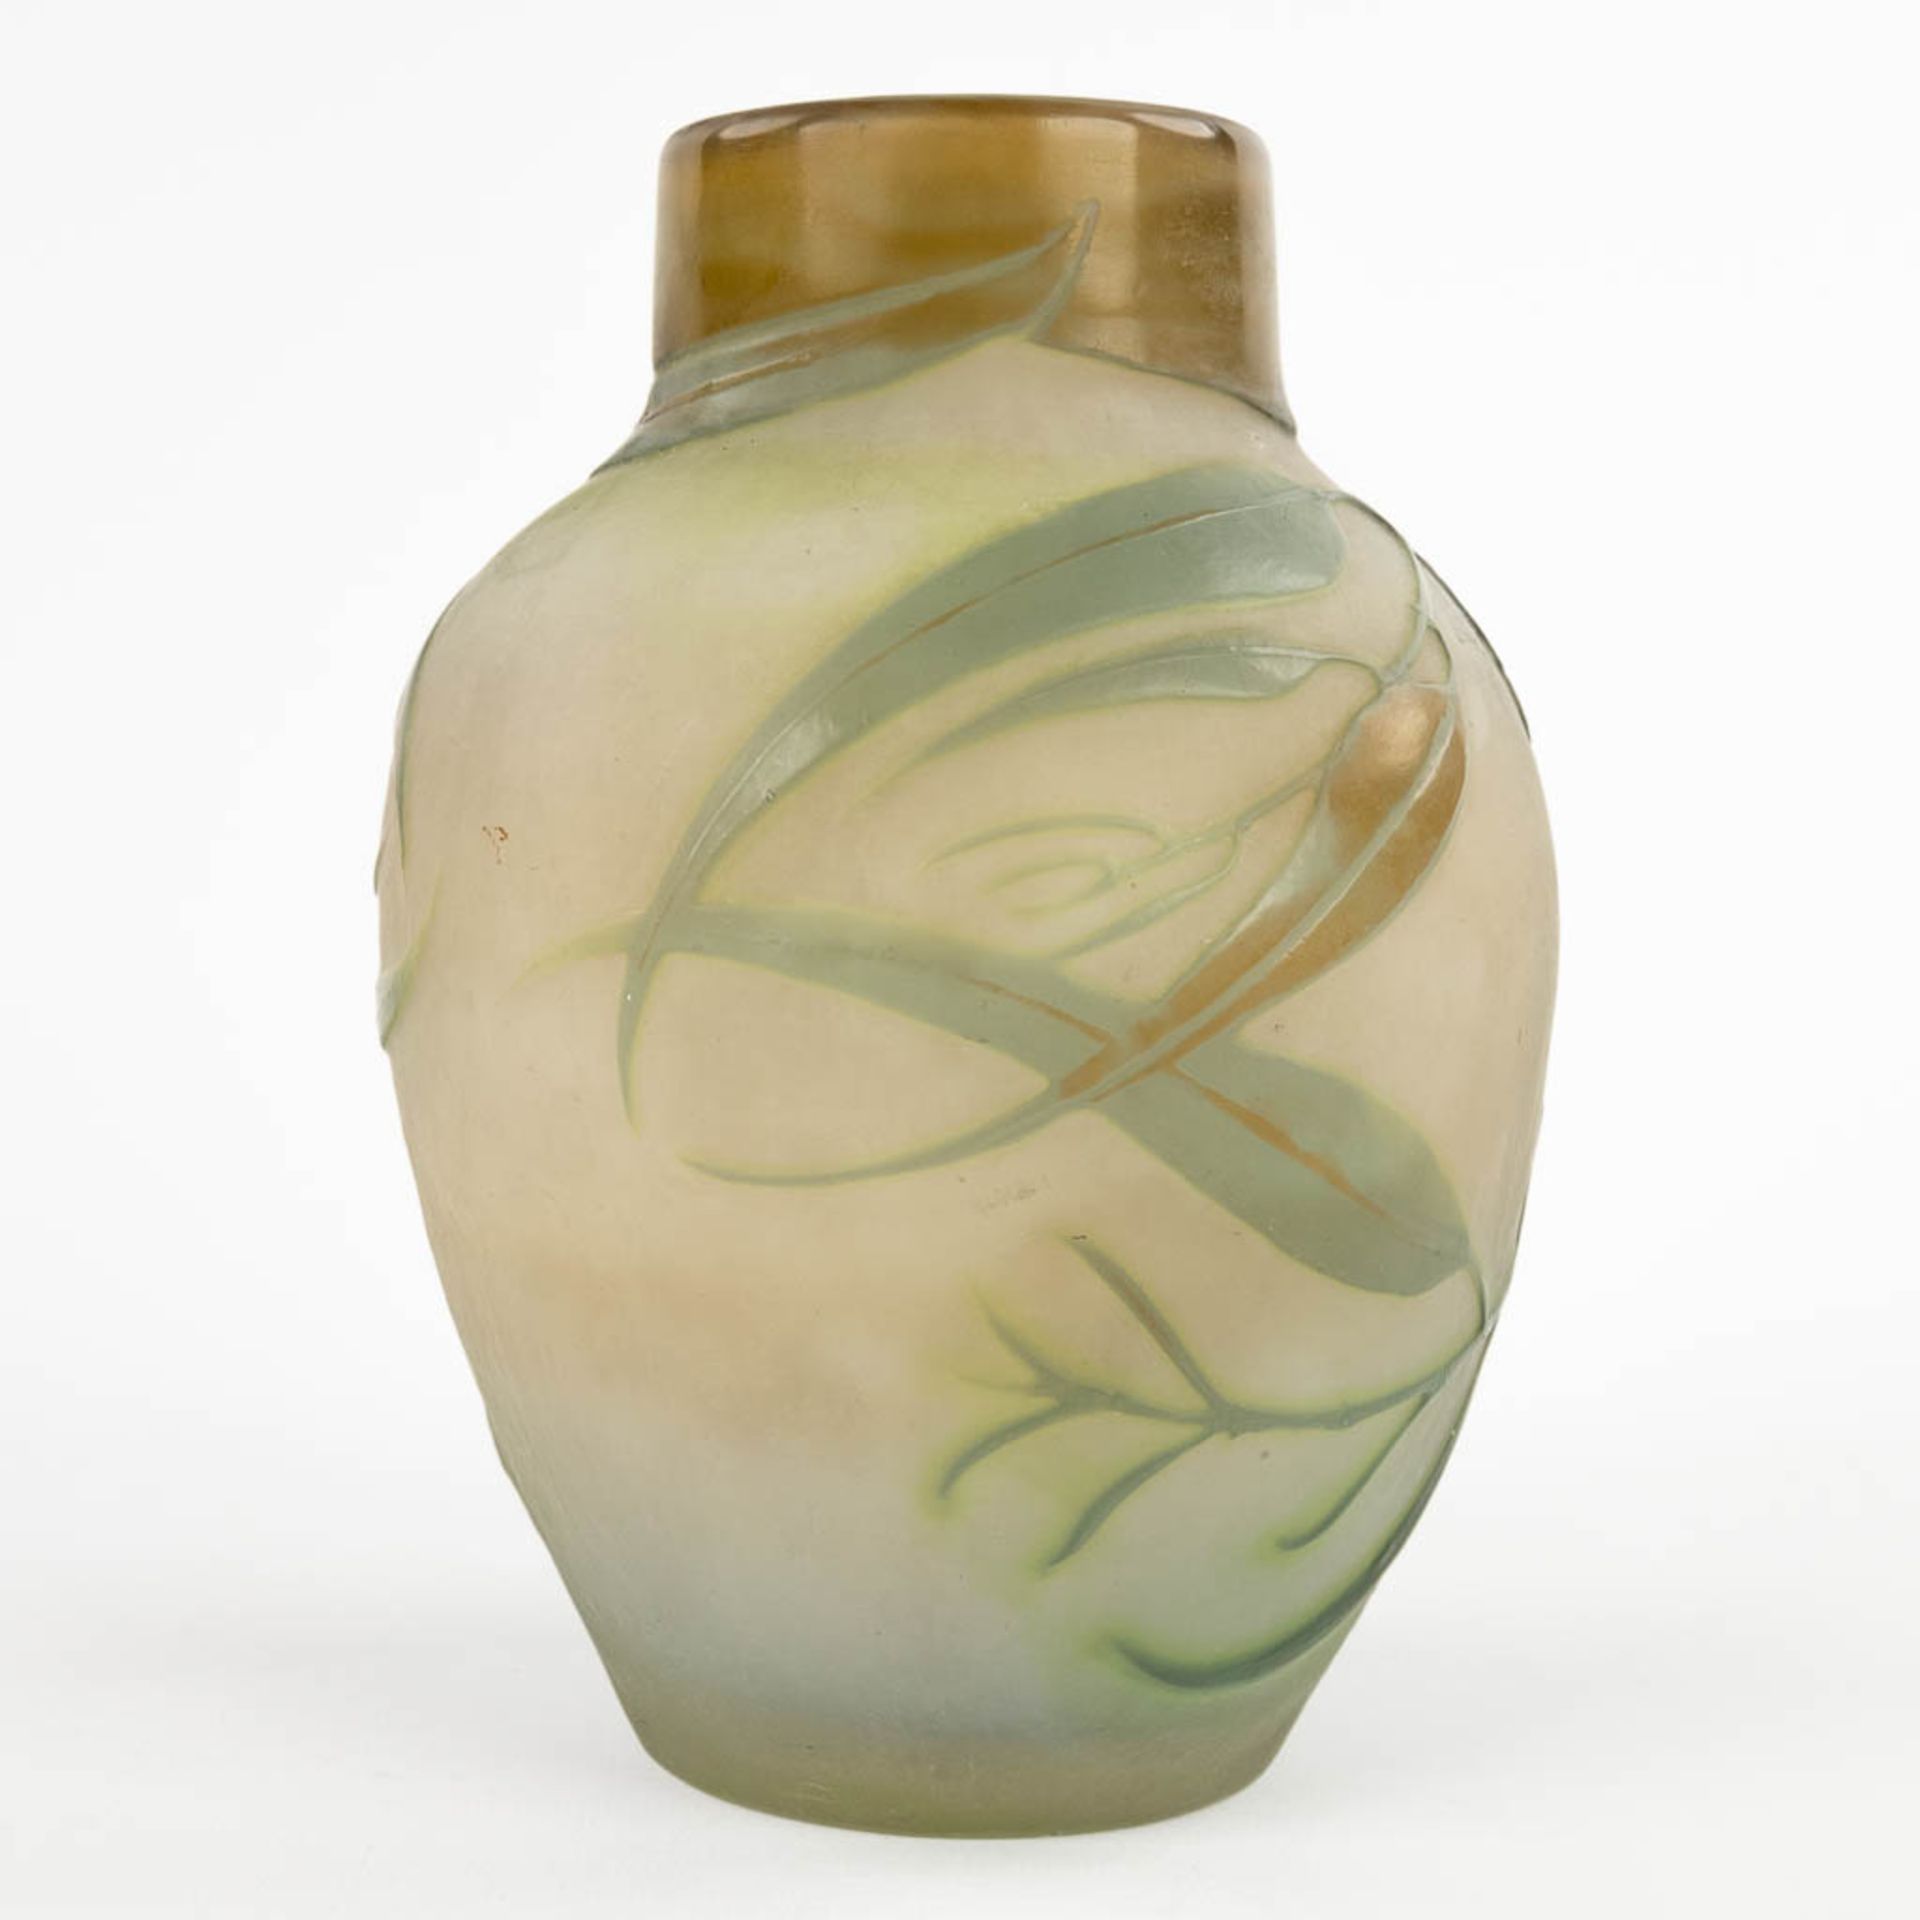 Emile GALLE (1846-1904) 'Vase' pate de verre glass. Circa 1905-1908. (H:18 x D:13 cm) - Bild 5 aus 10